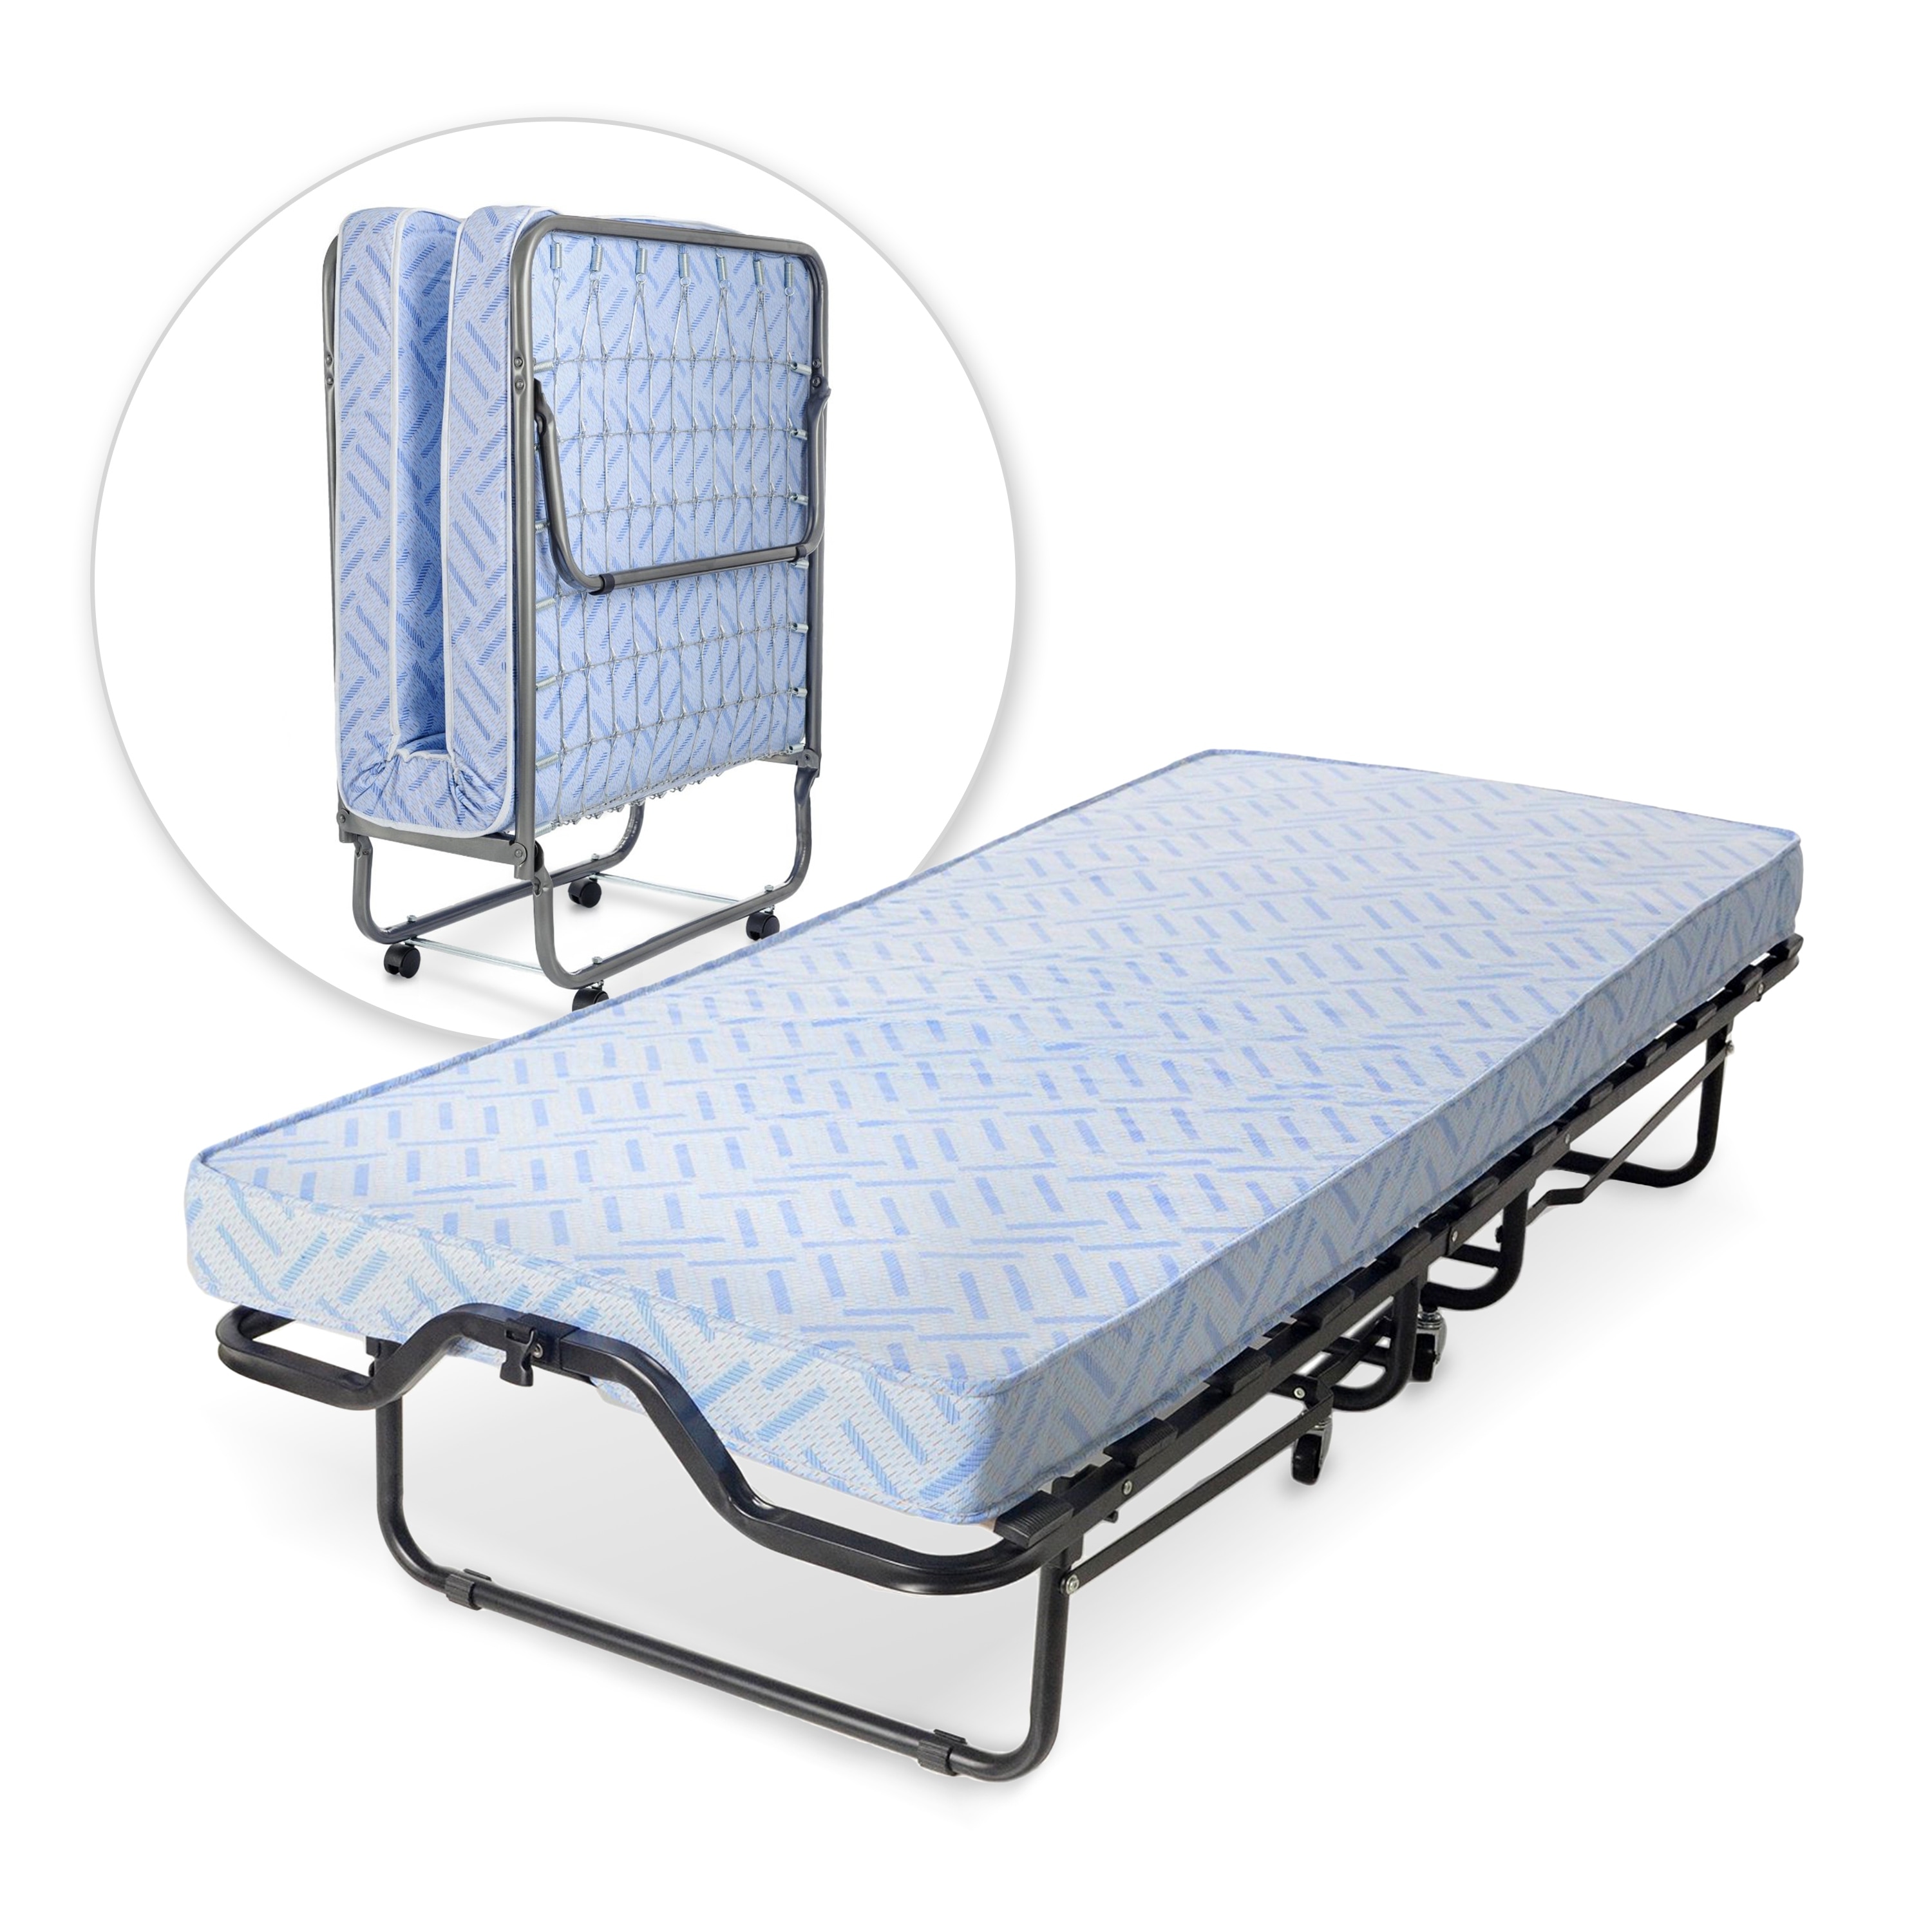 cot rollaway bed